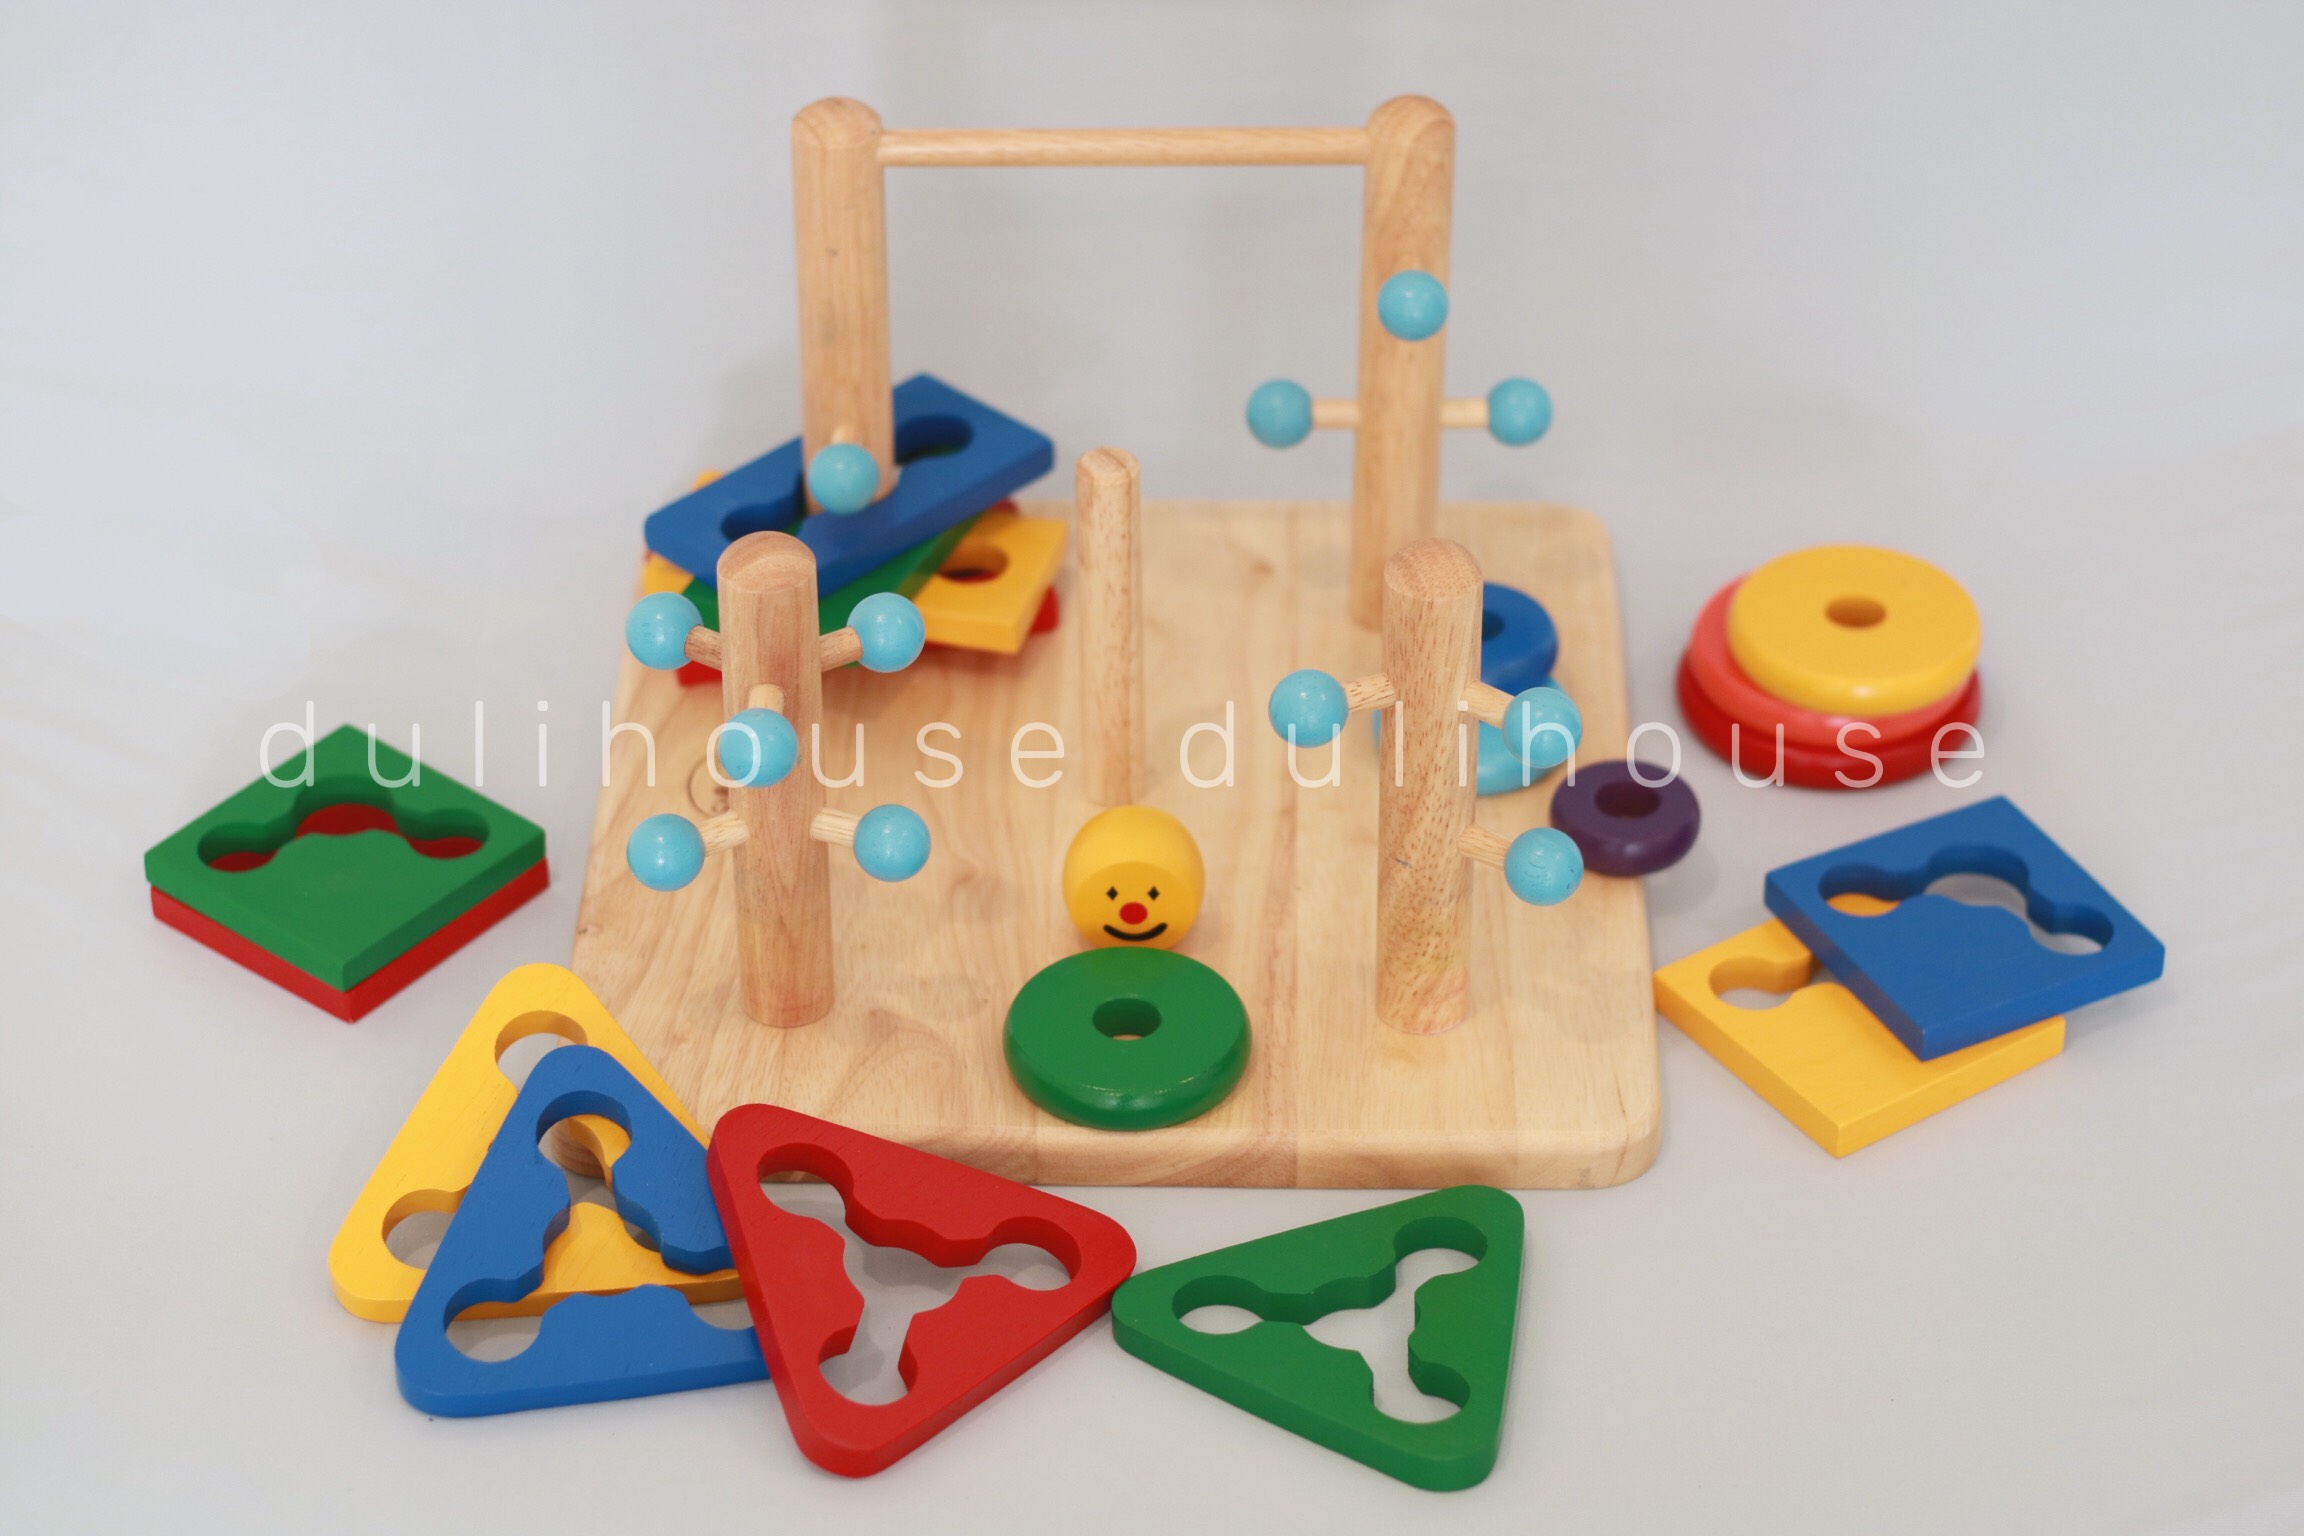 Đồ chơi gỗ phát triển vận động và tư duy - Đường luồn lý thú & Hề tháp đa năng 7 màu cho Bé - Gỗ tự nhiên an toàn